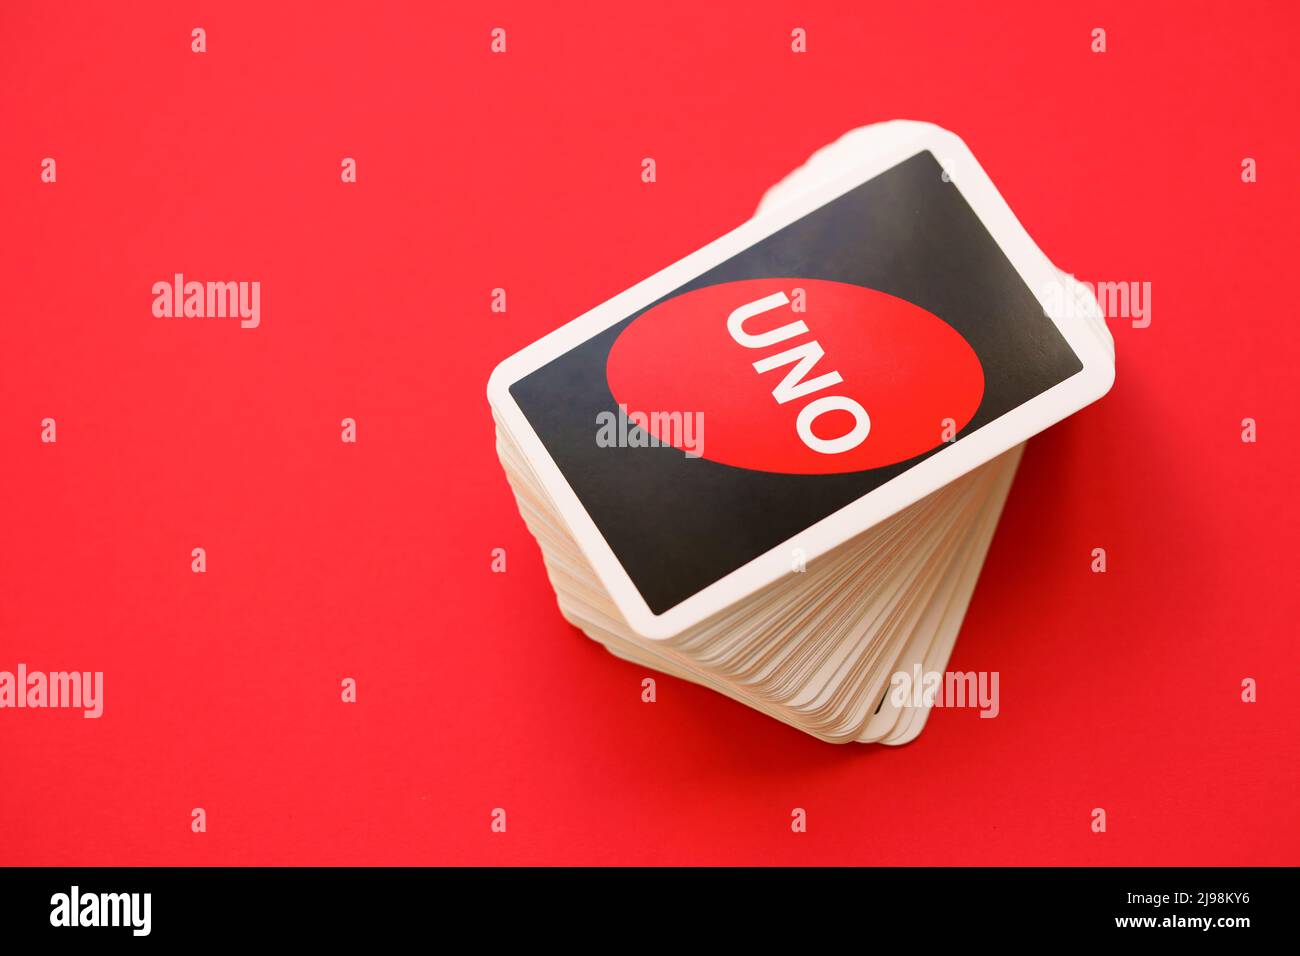 Uno game cards: Hãy cùng chơi Uno và thưởng thức những giây phút thư giãn tuyệt vời. Bạn sẽ không những được trải nghiệm sự táo bạo trong những nước bài, mà còn tăng cường kỹ năng tư duy và sự cảm thông. Hãy cùng nhau khám phá thế giới của Uno và trở thành những tay chơi giỏi nhất nhé!